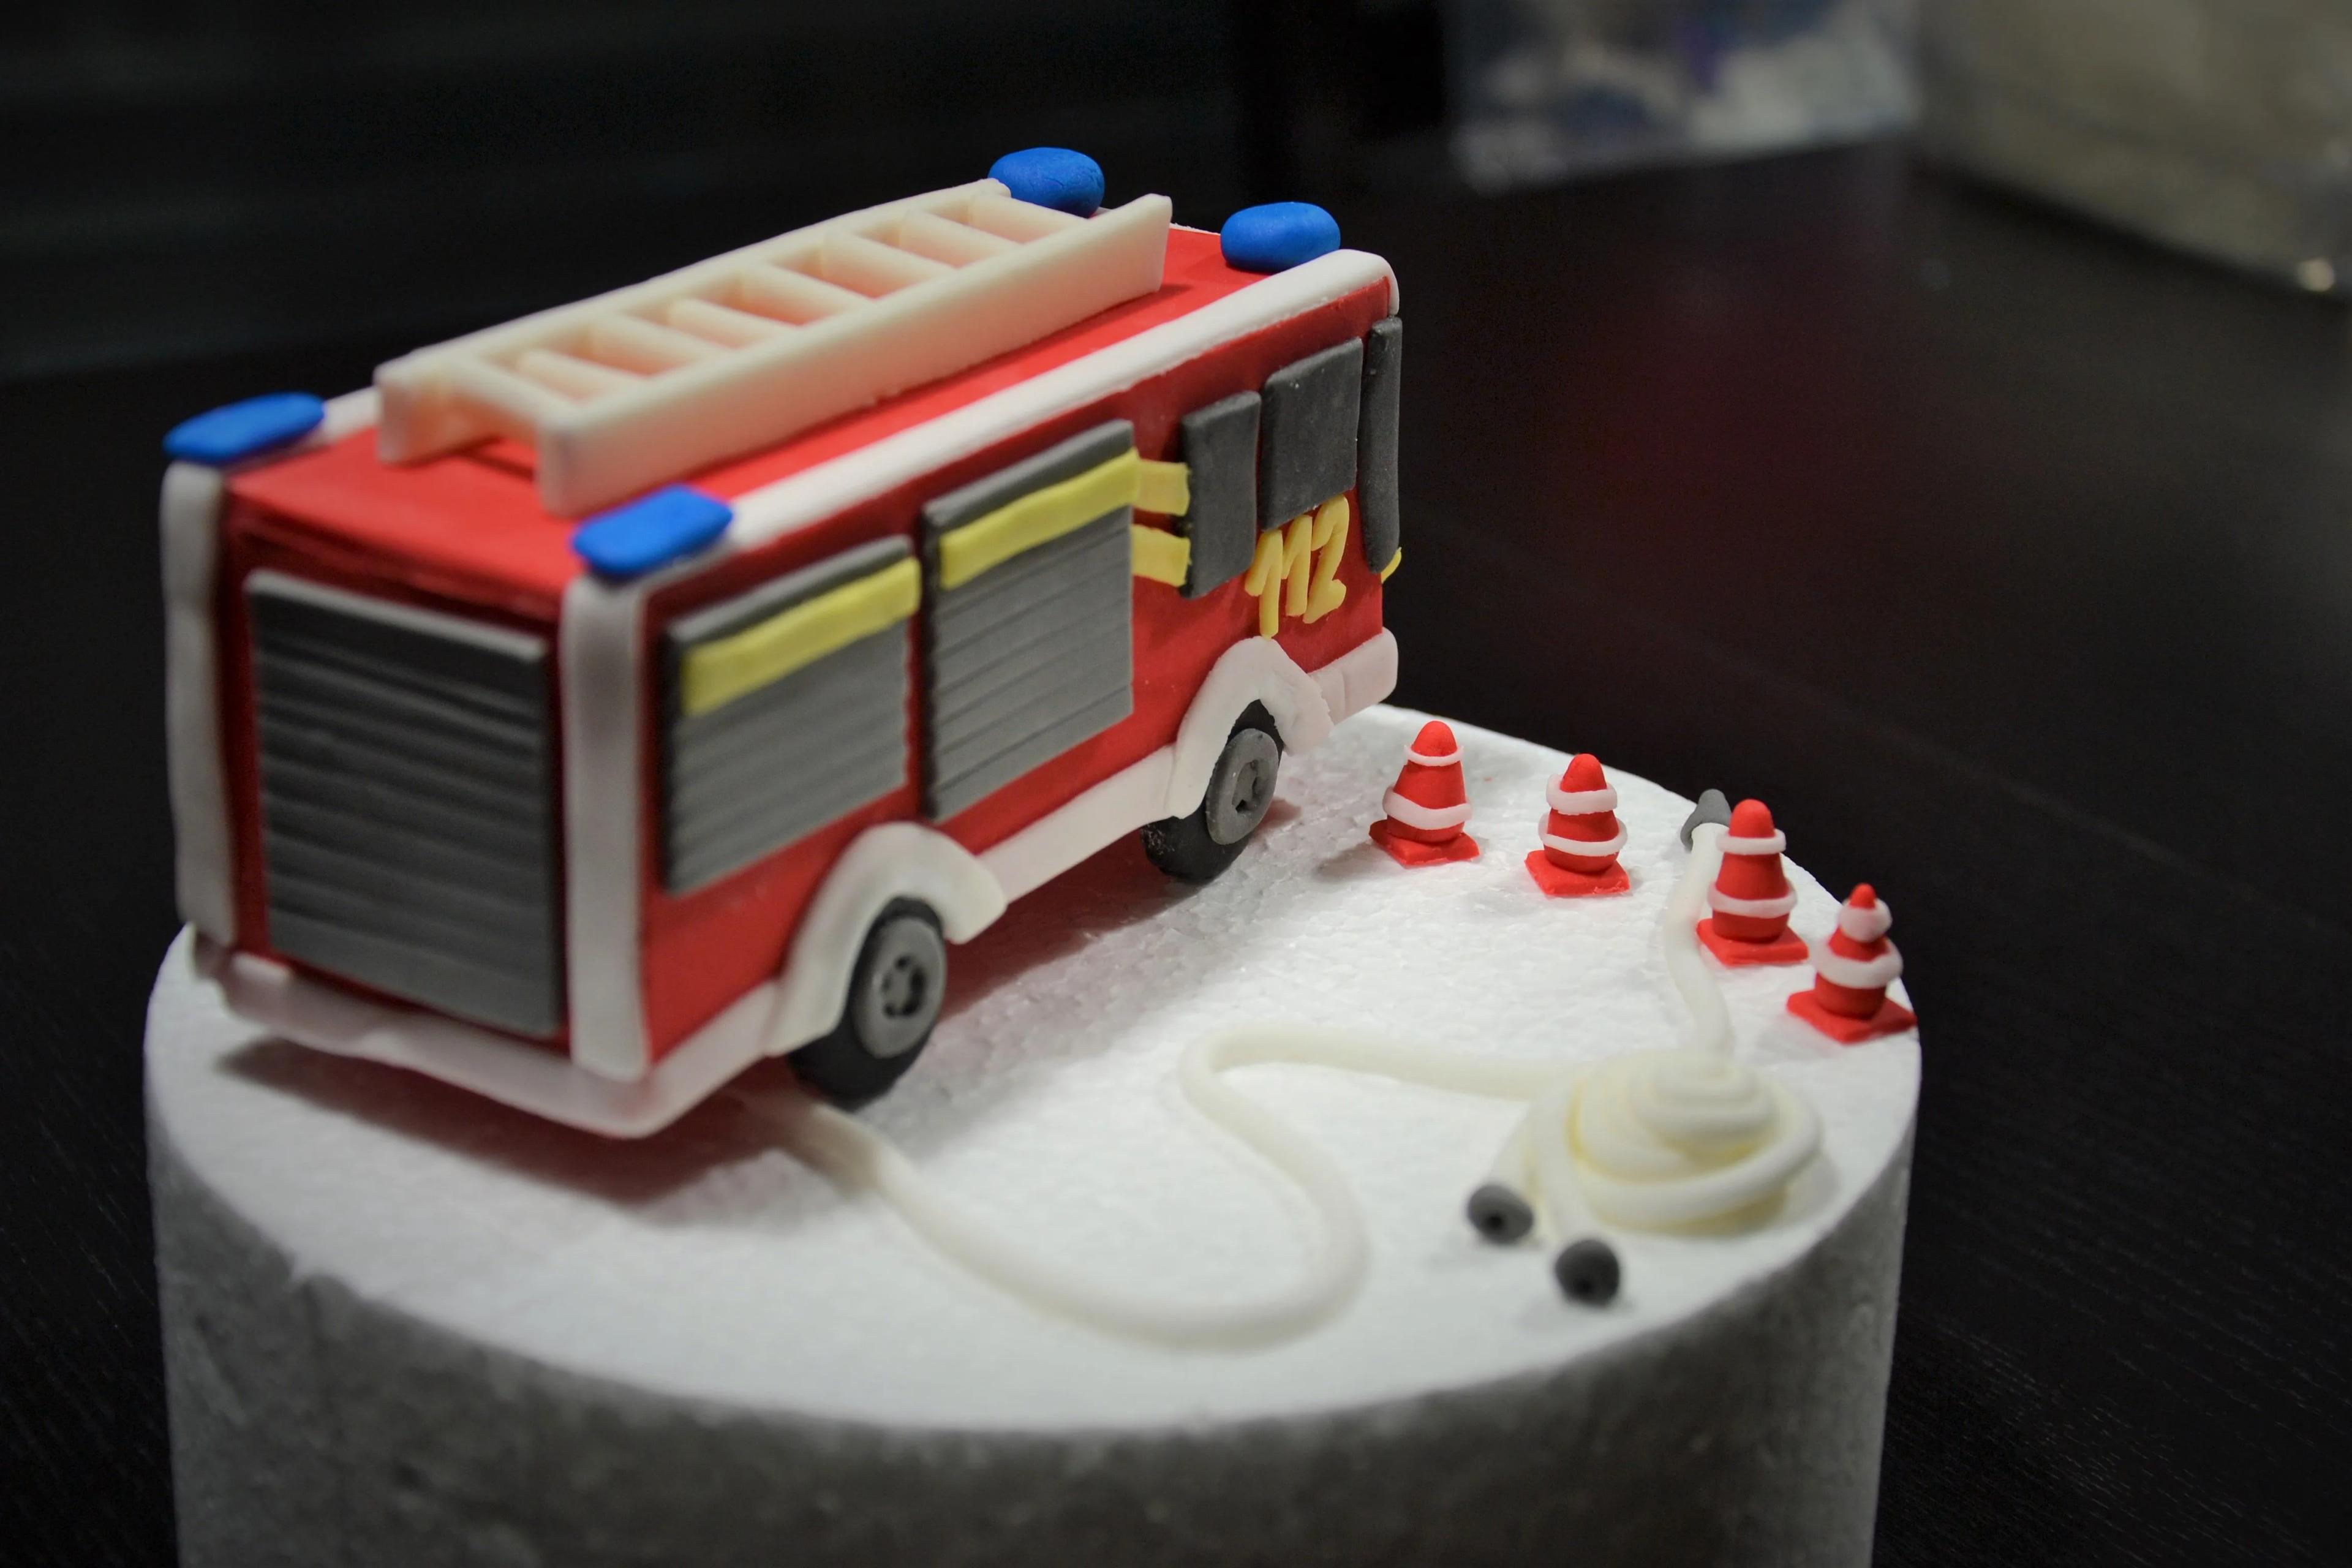 Feuerwehr Torte | Feuerwehr torte, Motivtorten kindergeburtstag ...